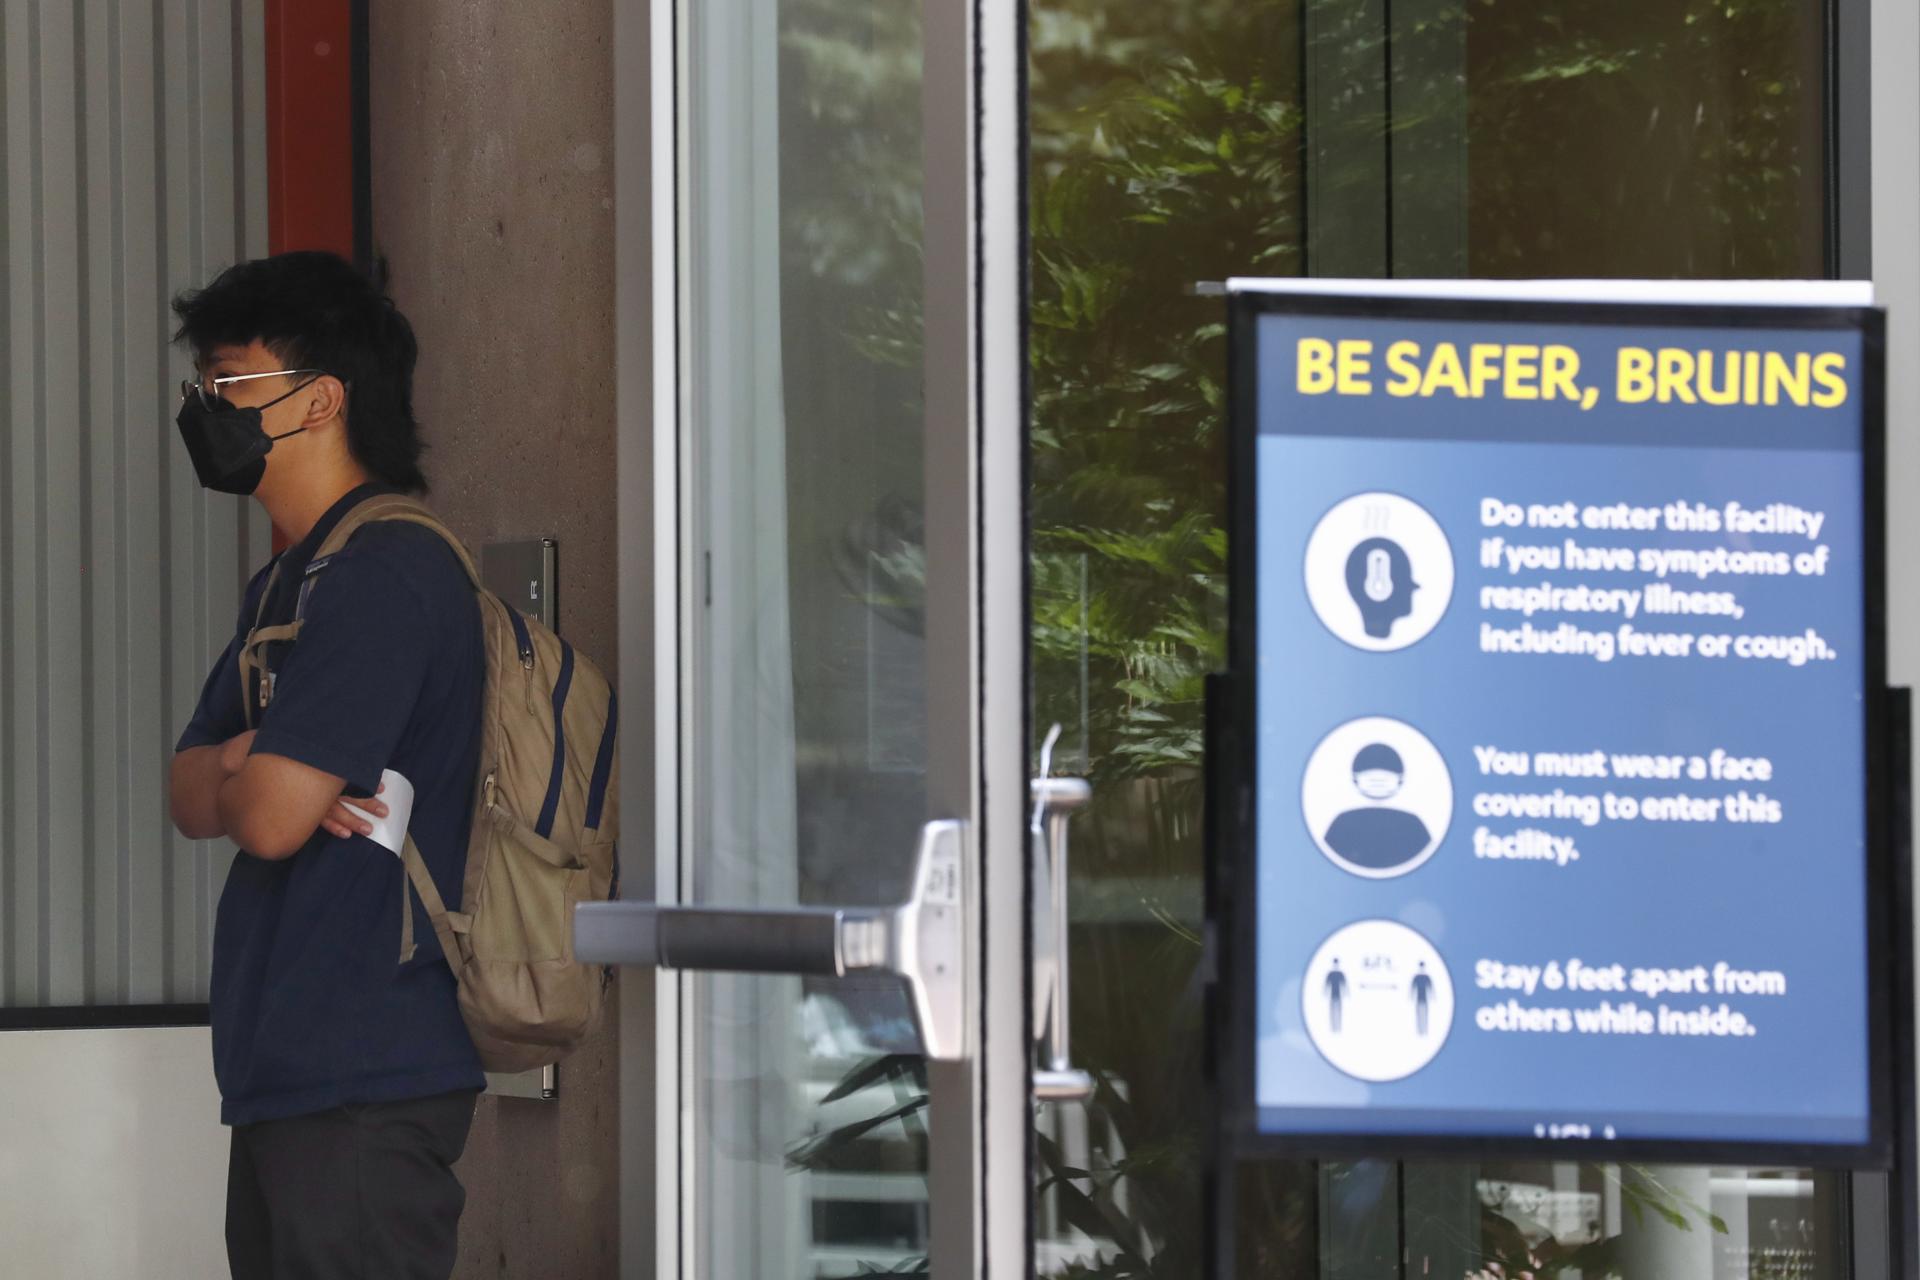 Un estudiante universitario de Los Ángeles lleva una mascarilla. EFE/CAROLINE BREHMAN